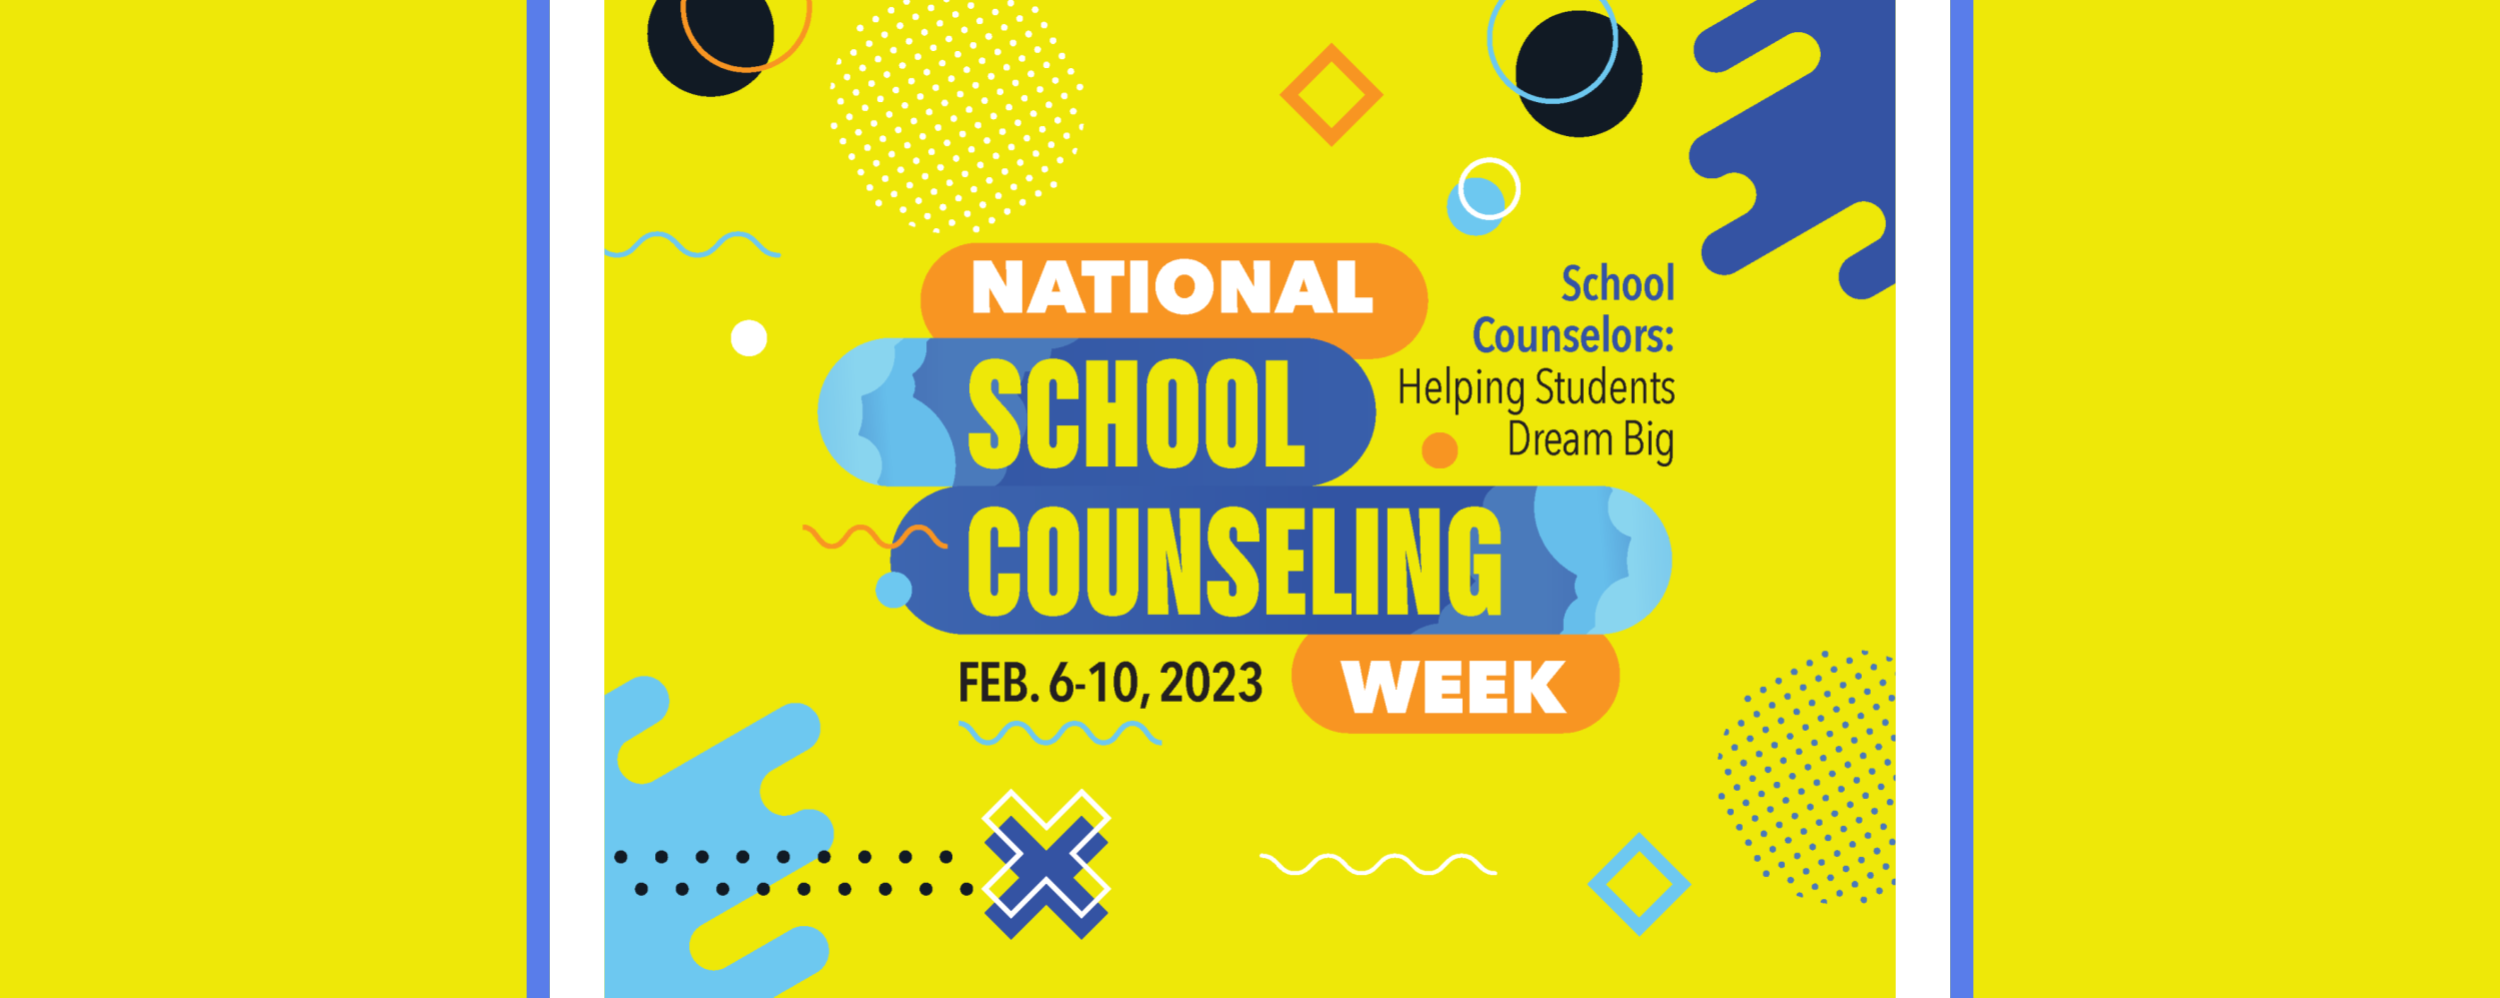 School Counseling week